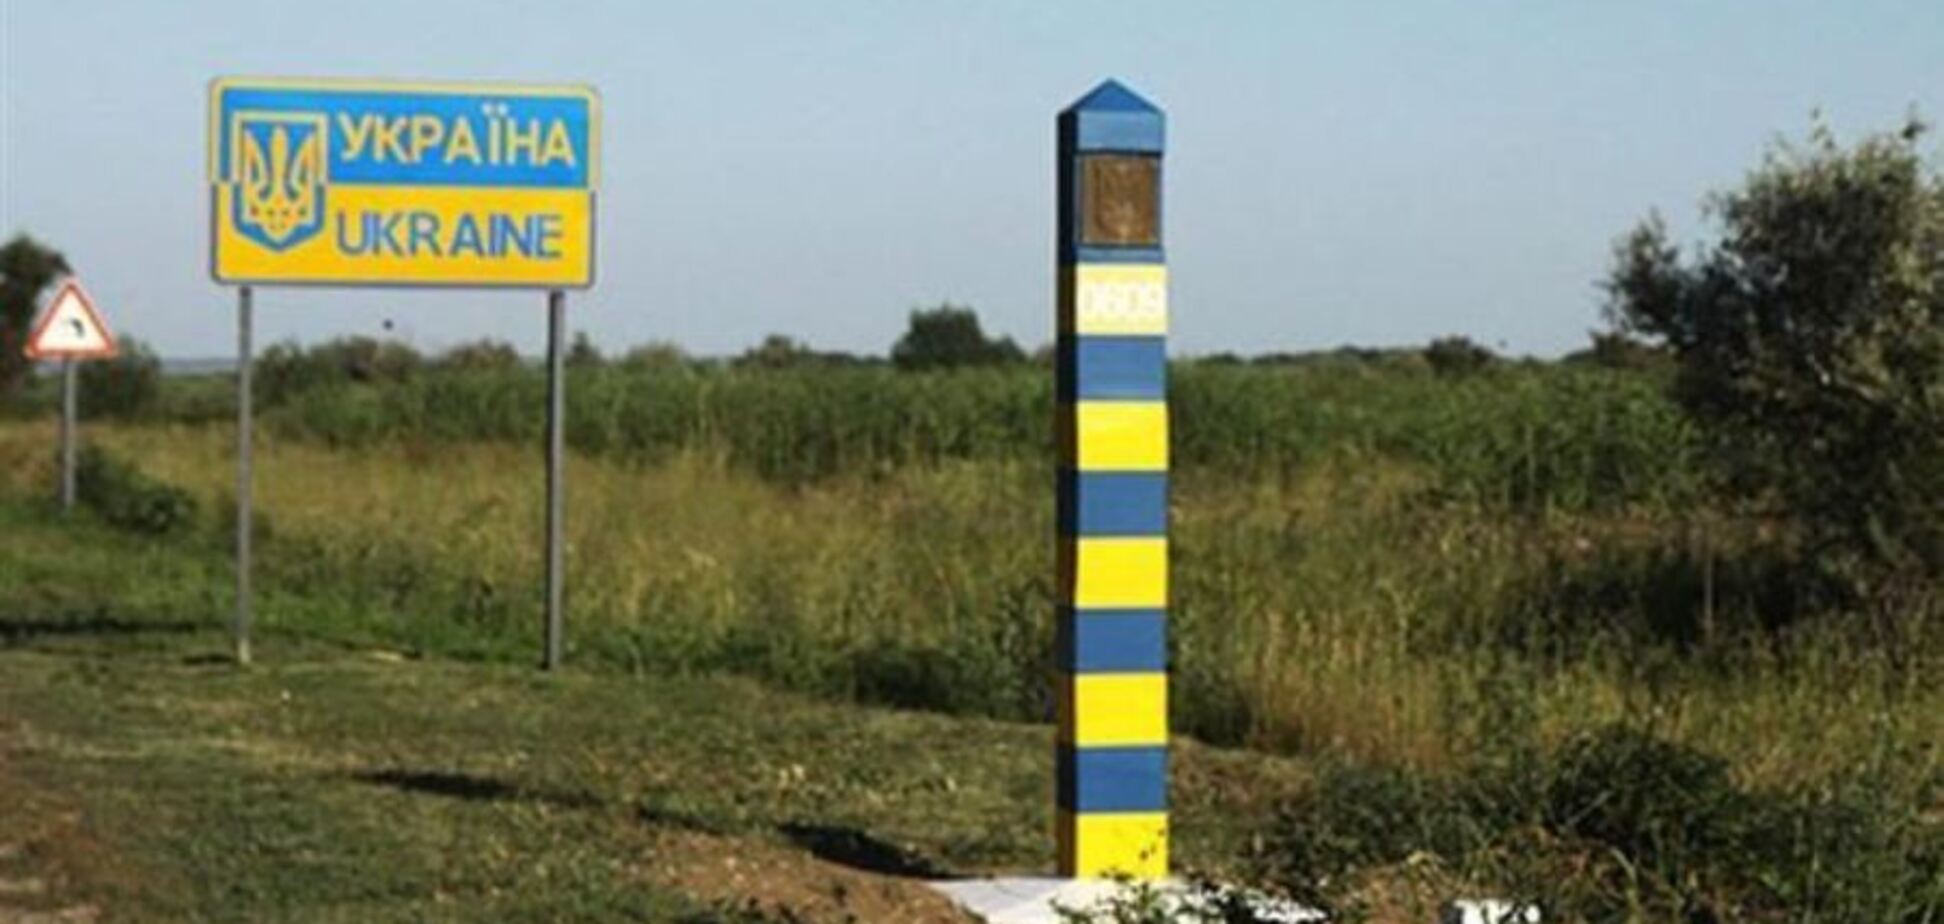 Через украинскую границу попыталась прорваться группа россиян